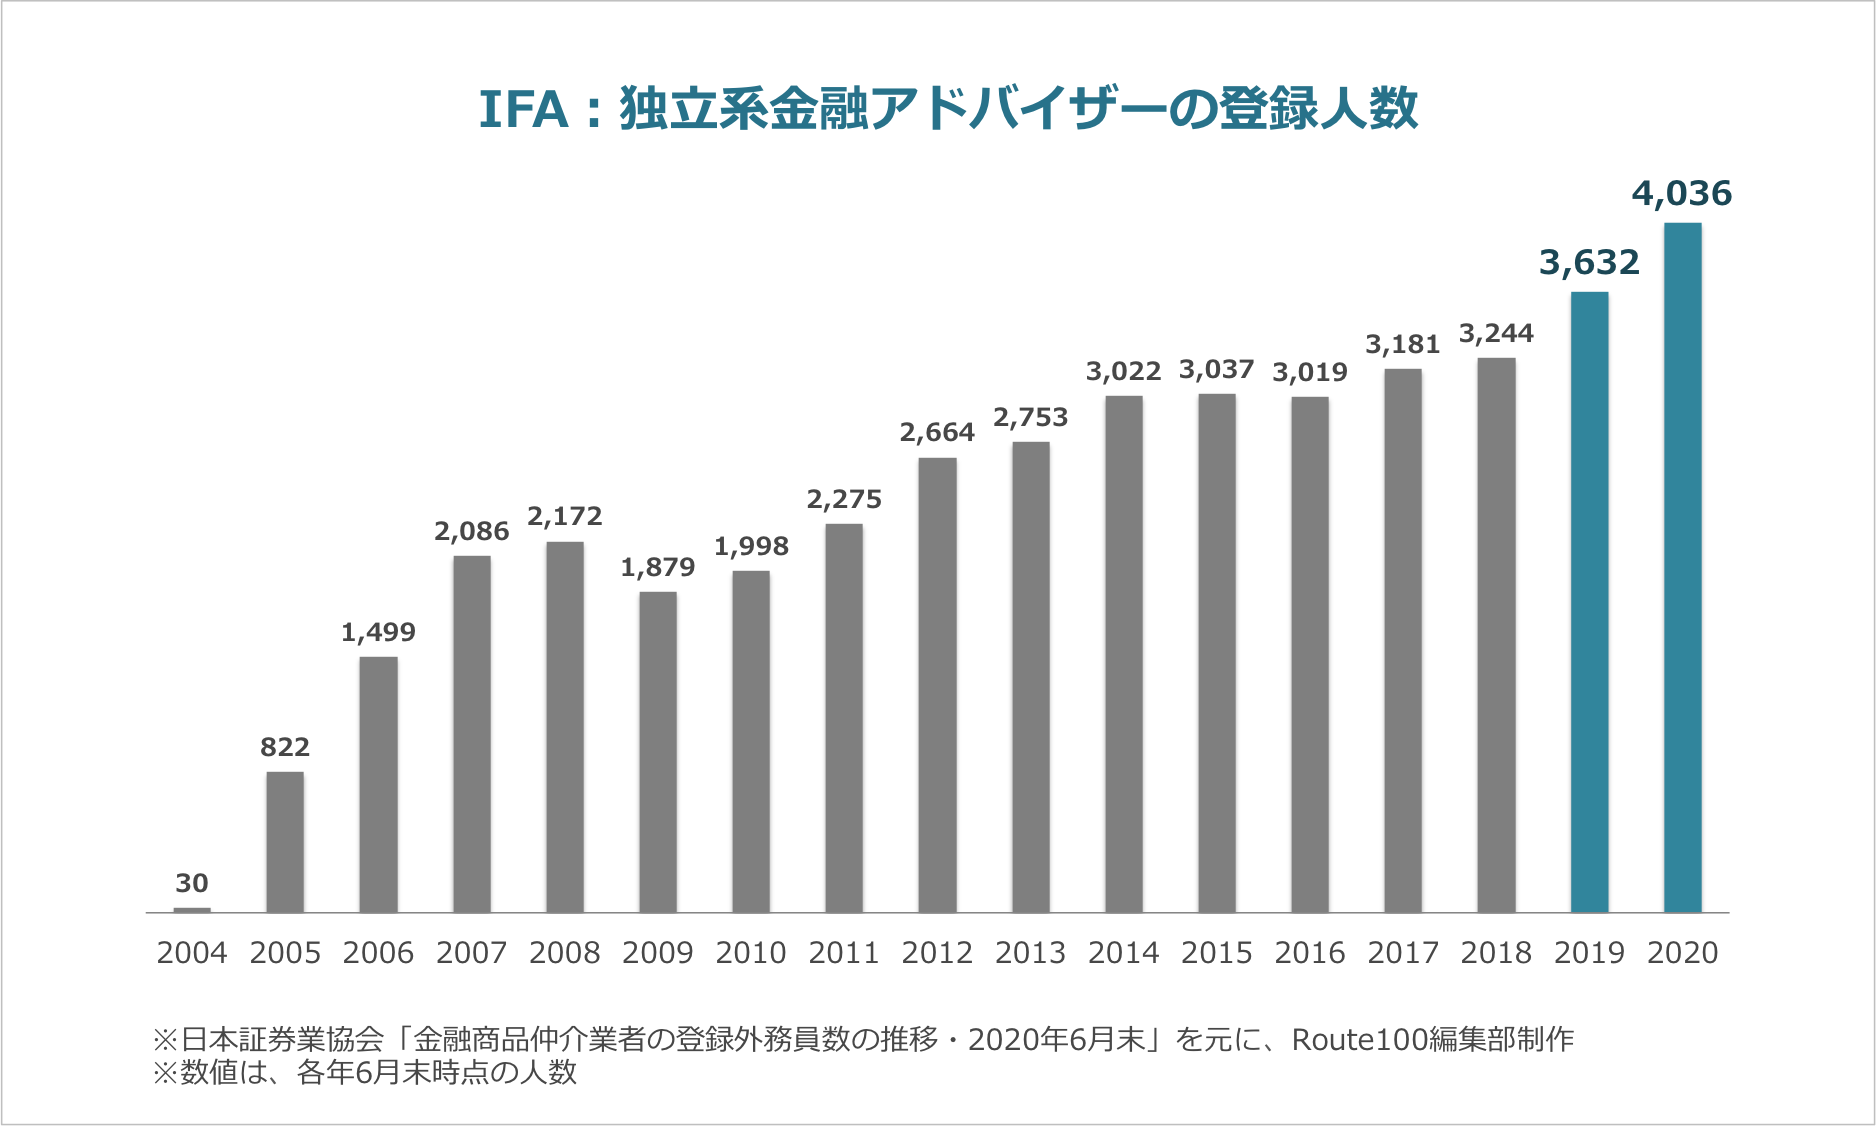 IFA登録人数の推移